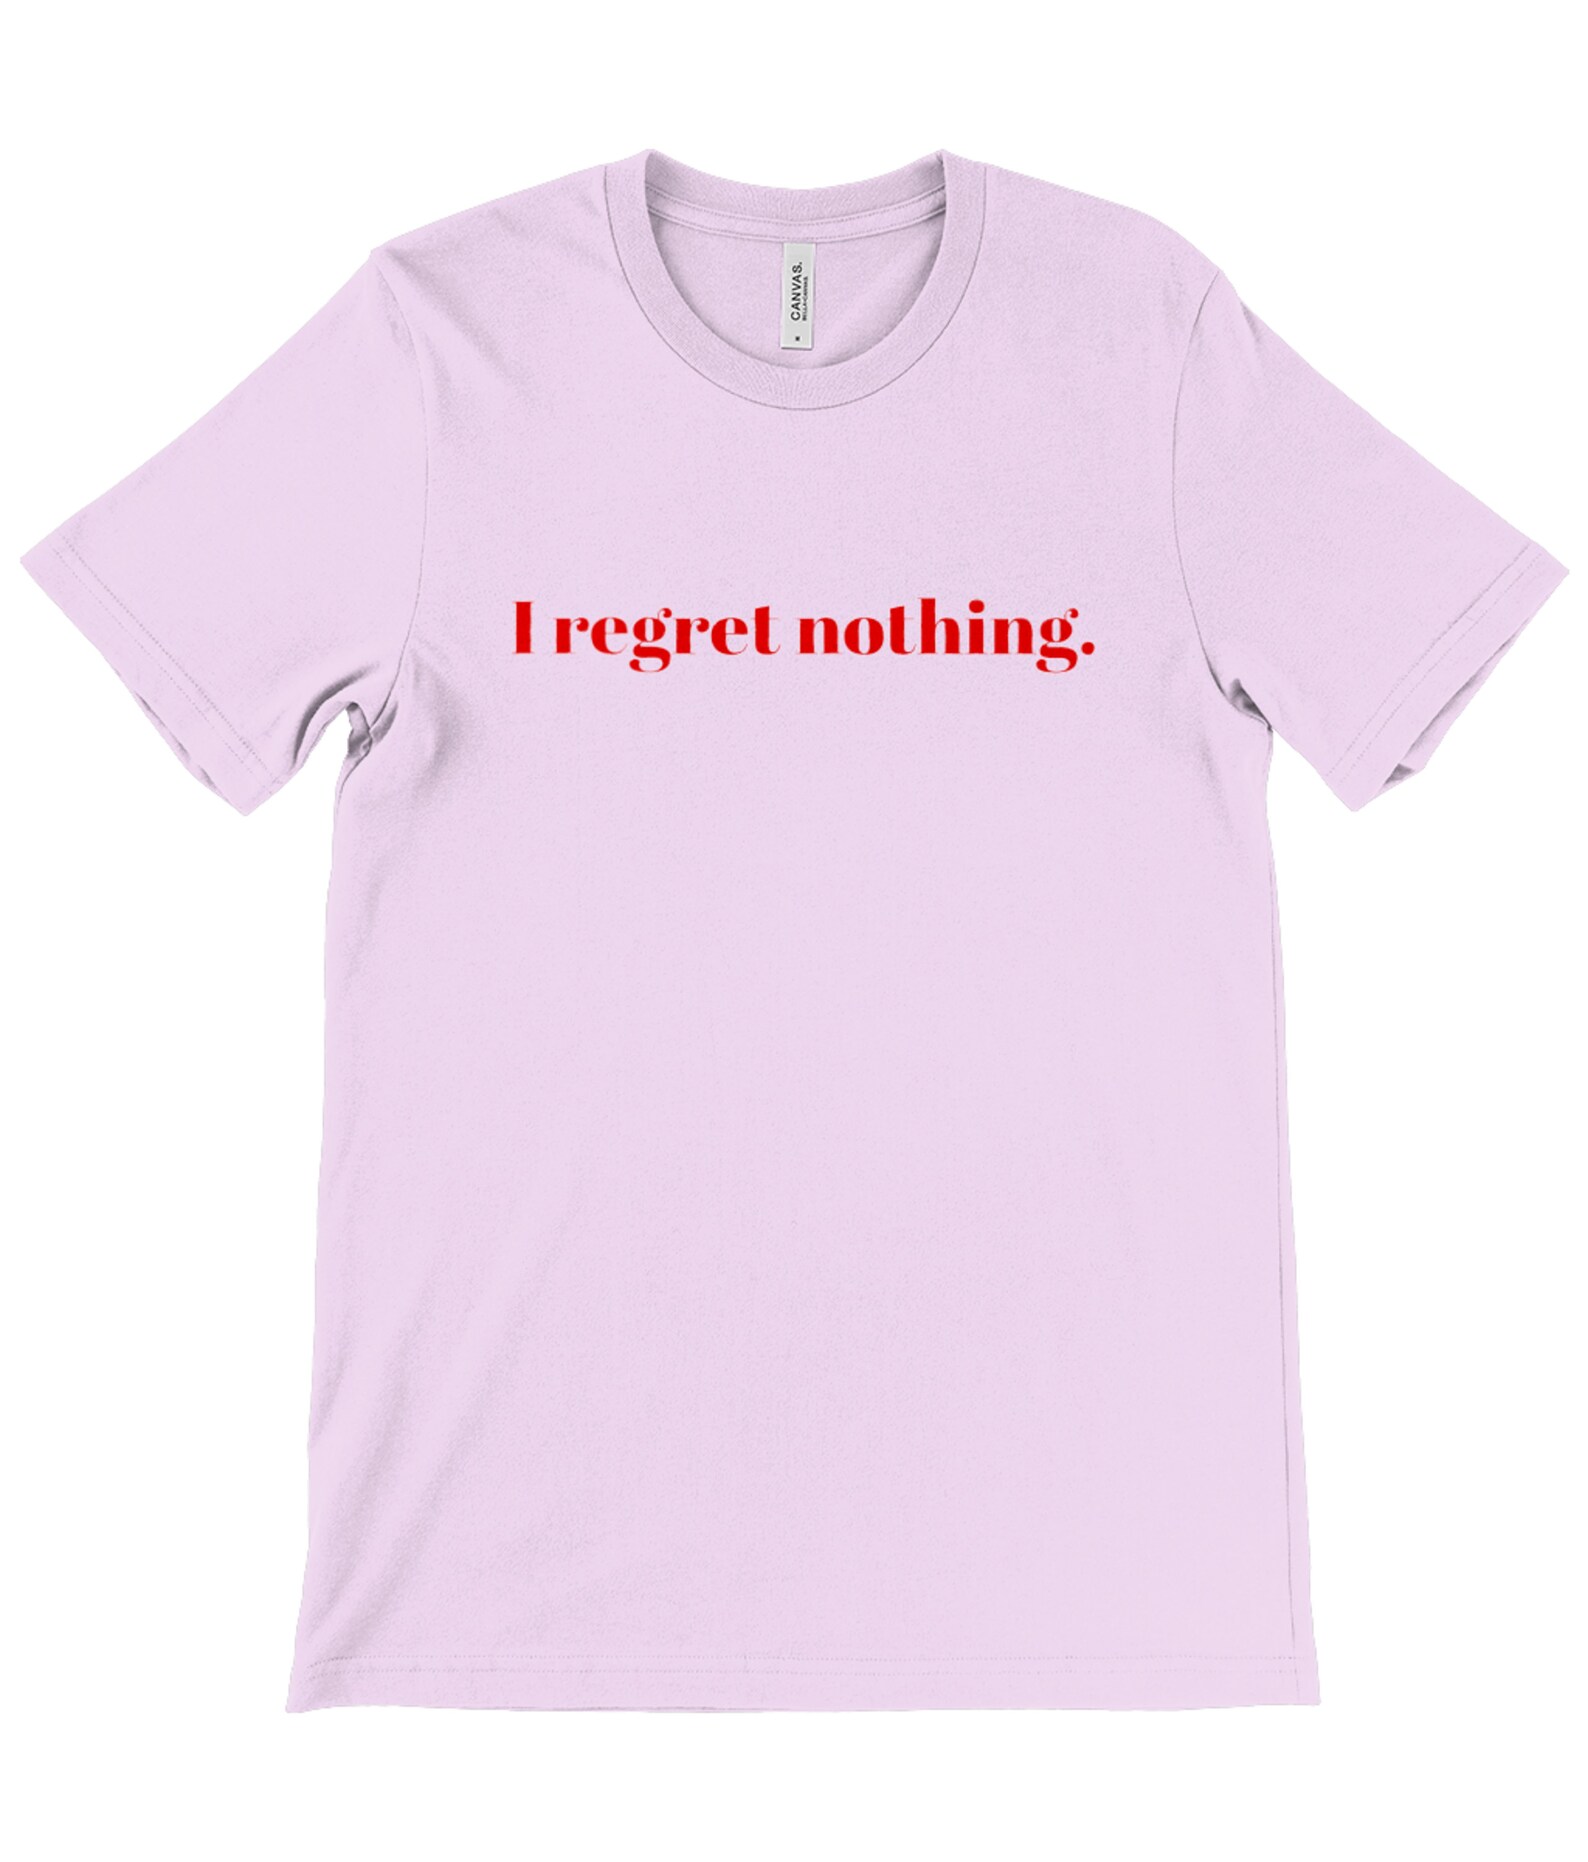 I Regret Nothing Slogan T-shirt Unisex Tee Ironic | Etsy